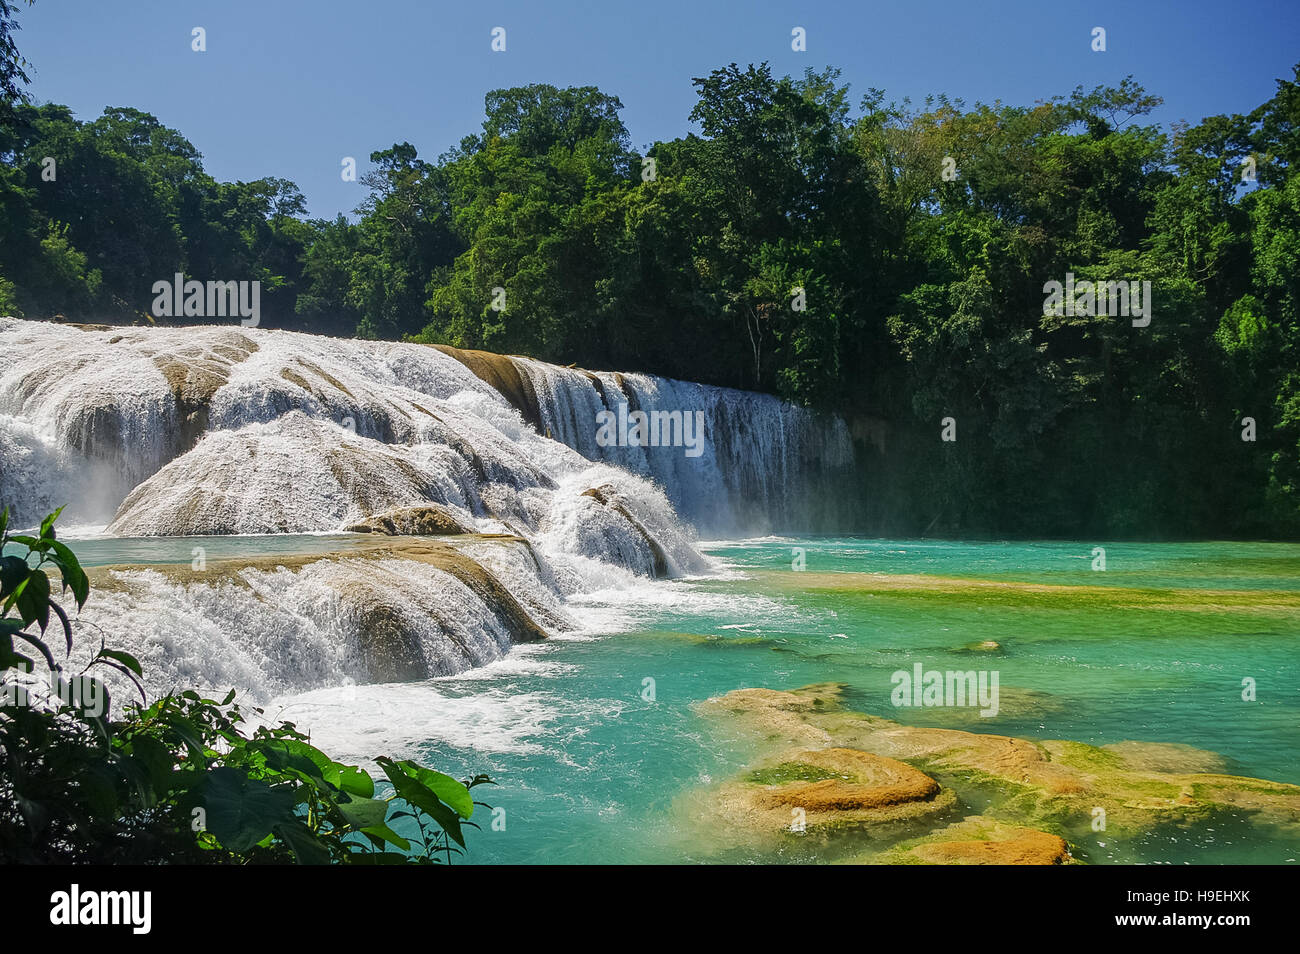 Cascadas de Agua Azul waterfalls. Agua Azul. Yucatan. Mexico Stock Photo